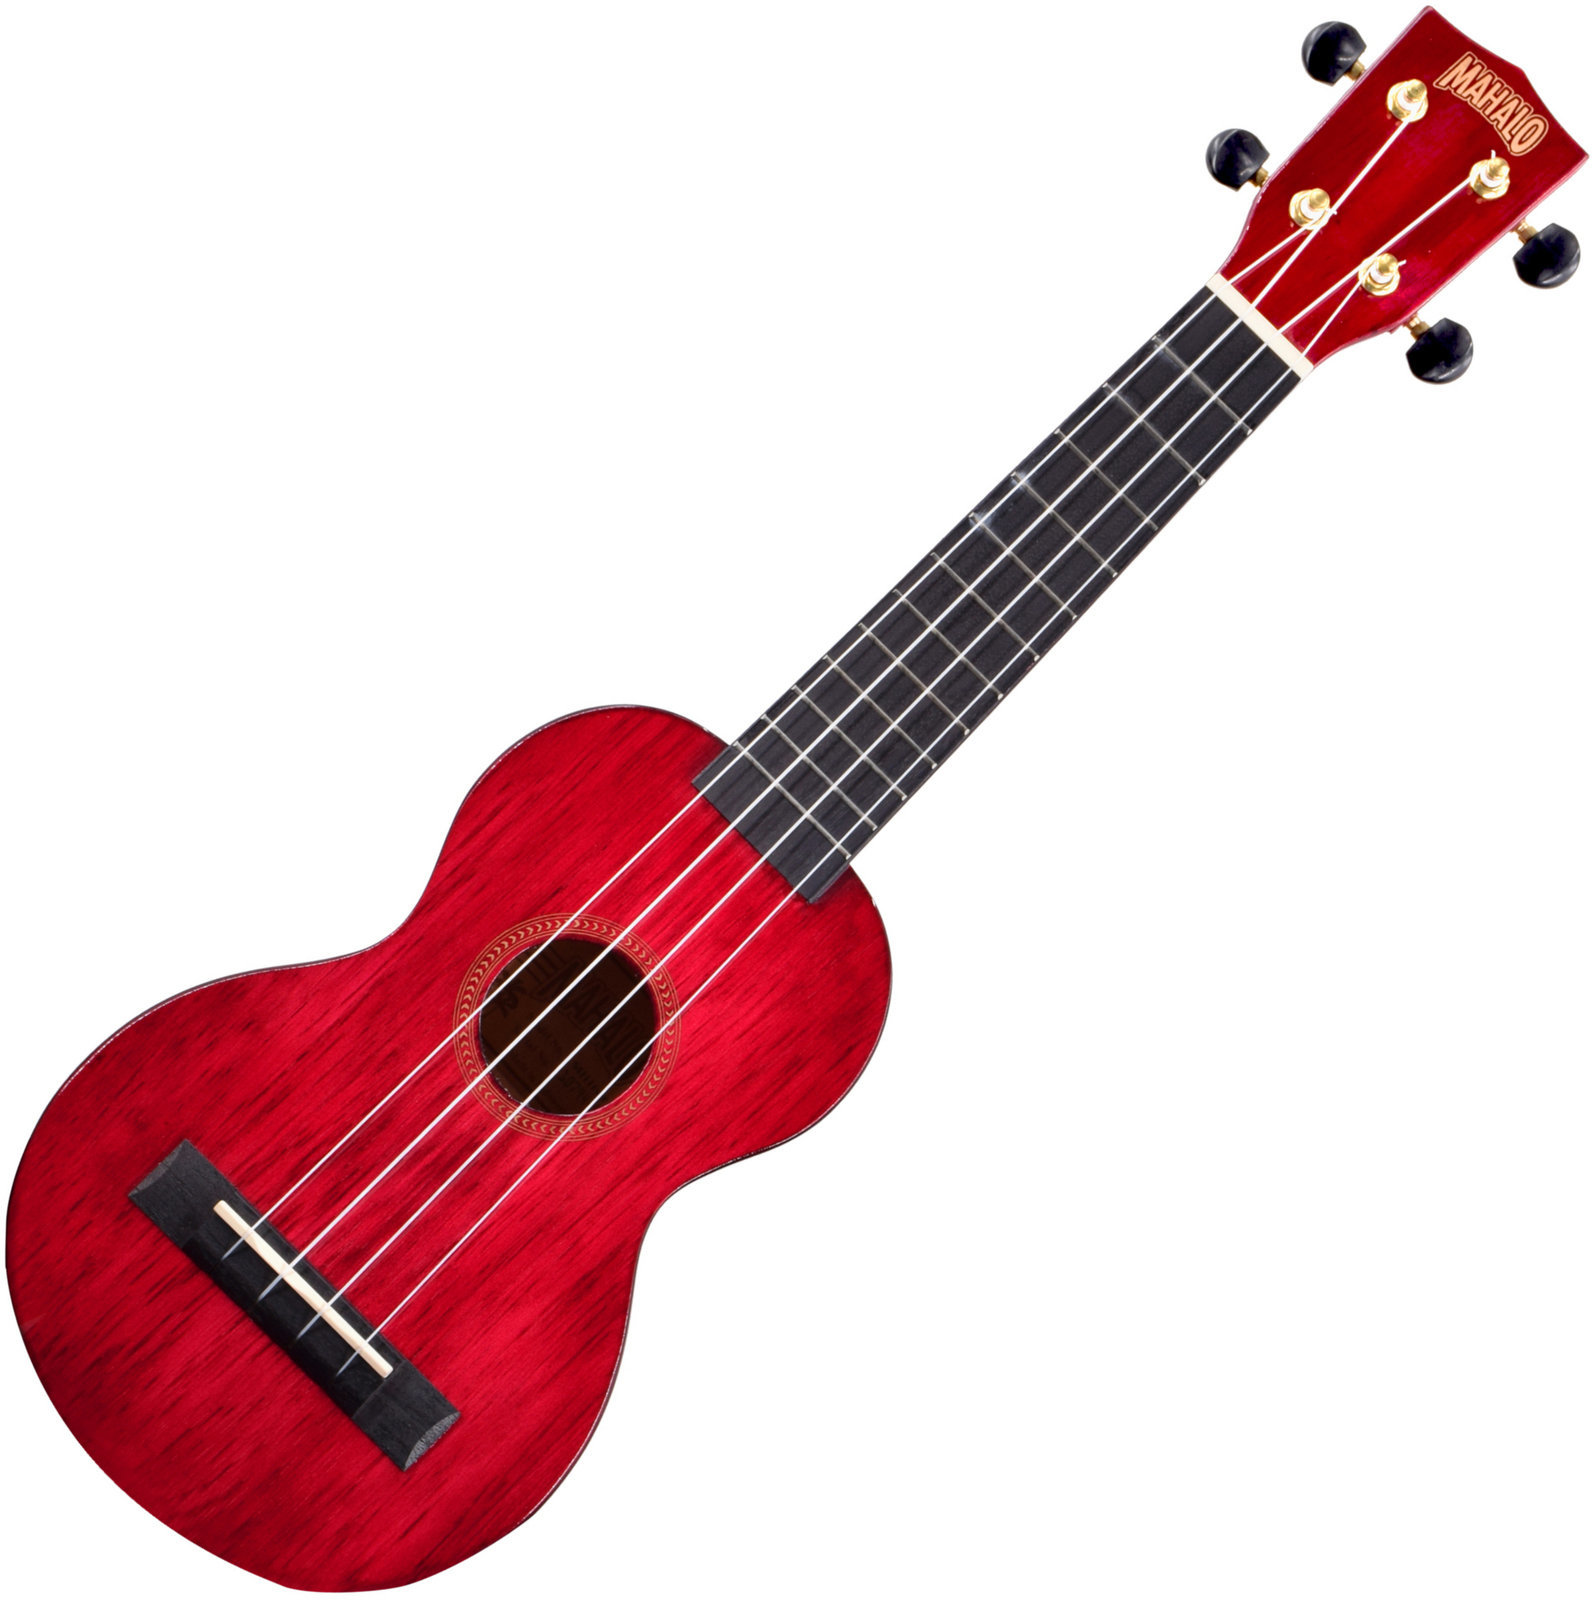 Soprano ukulele Mahalo Soprano Ukulele Trans Wine Red